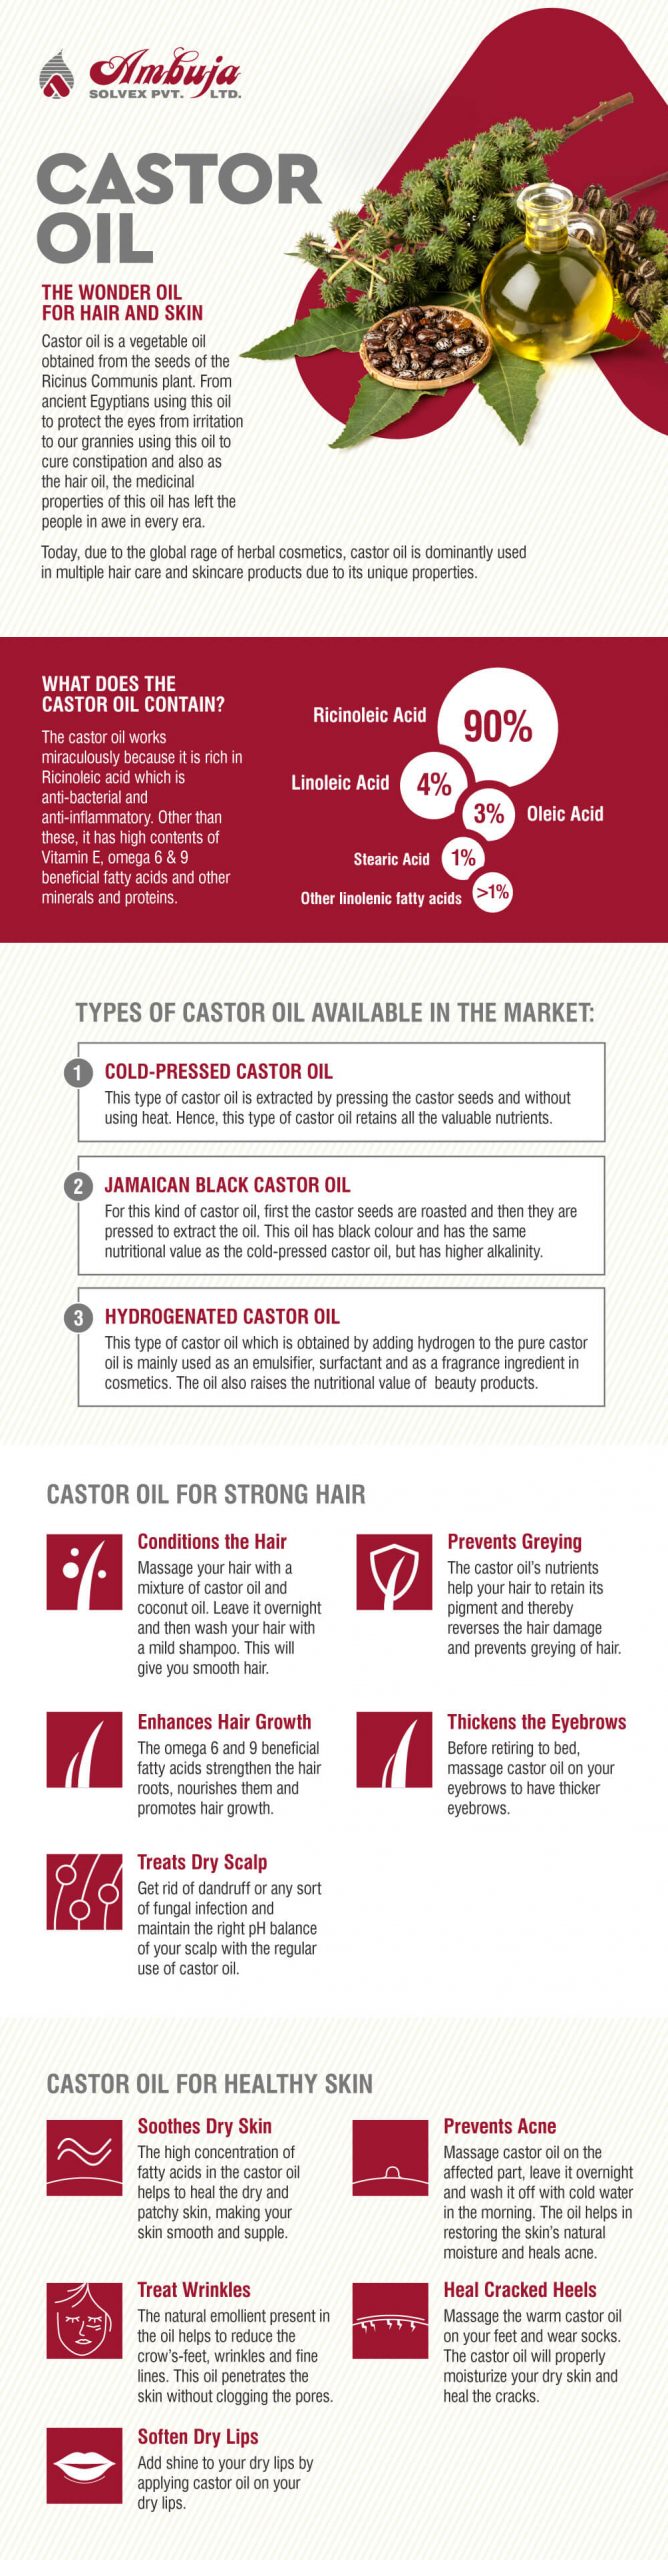 Castor Oil - The Wonder Oil for Hair and Skin